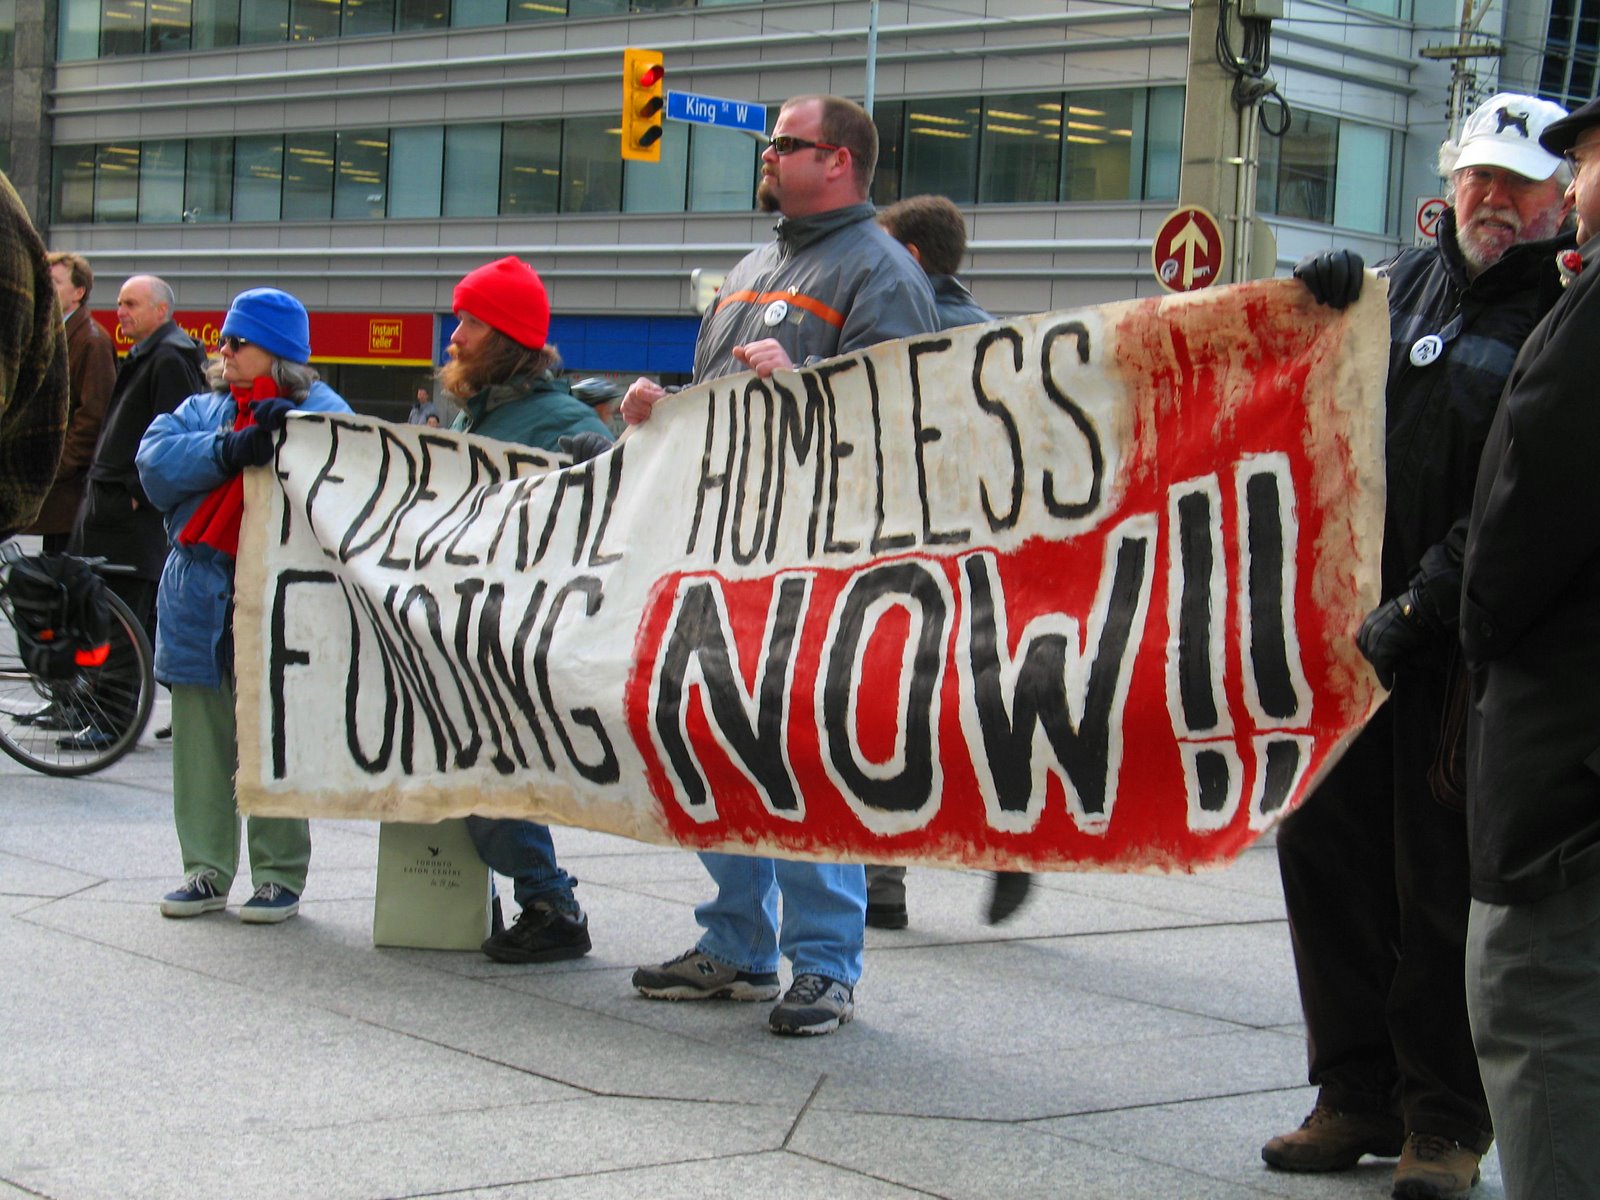 [federal_homeless_funding_now.jpg]